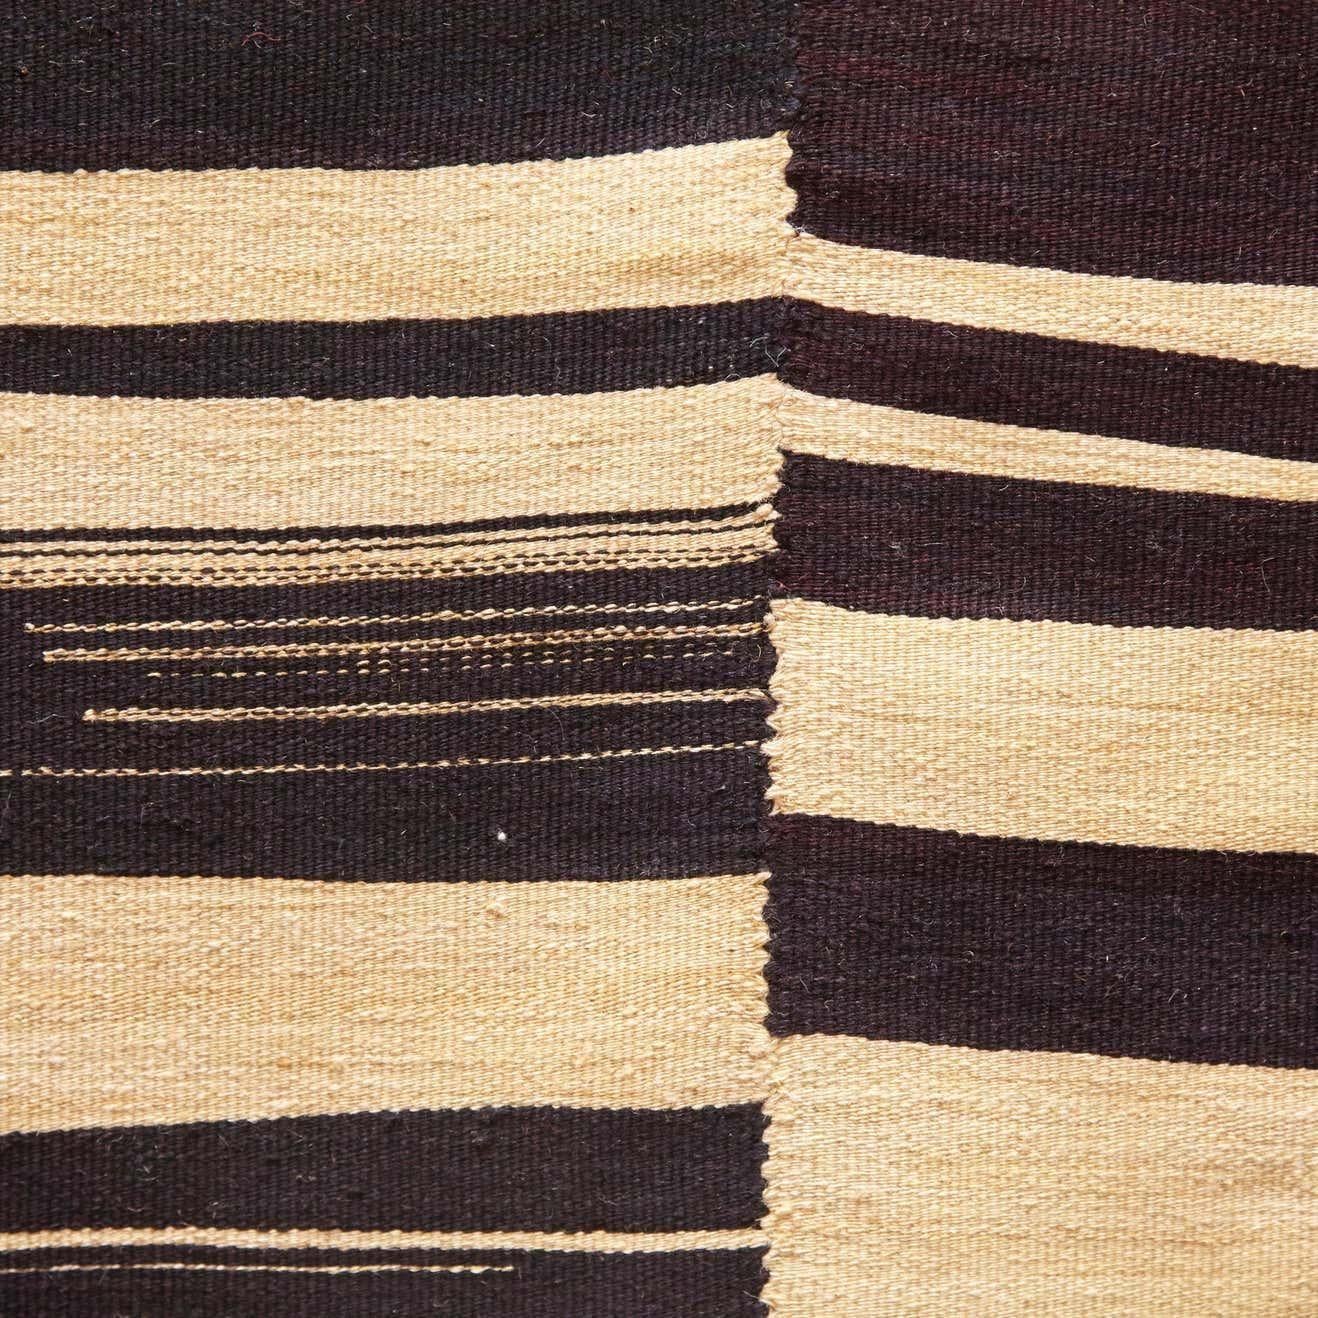 Wool Kilim, 2015
Measures: 206 x 213 cm.